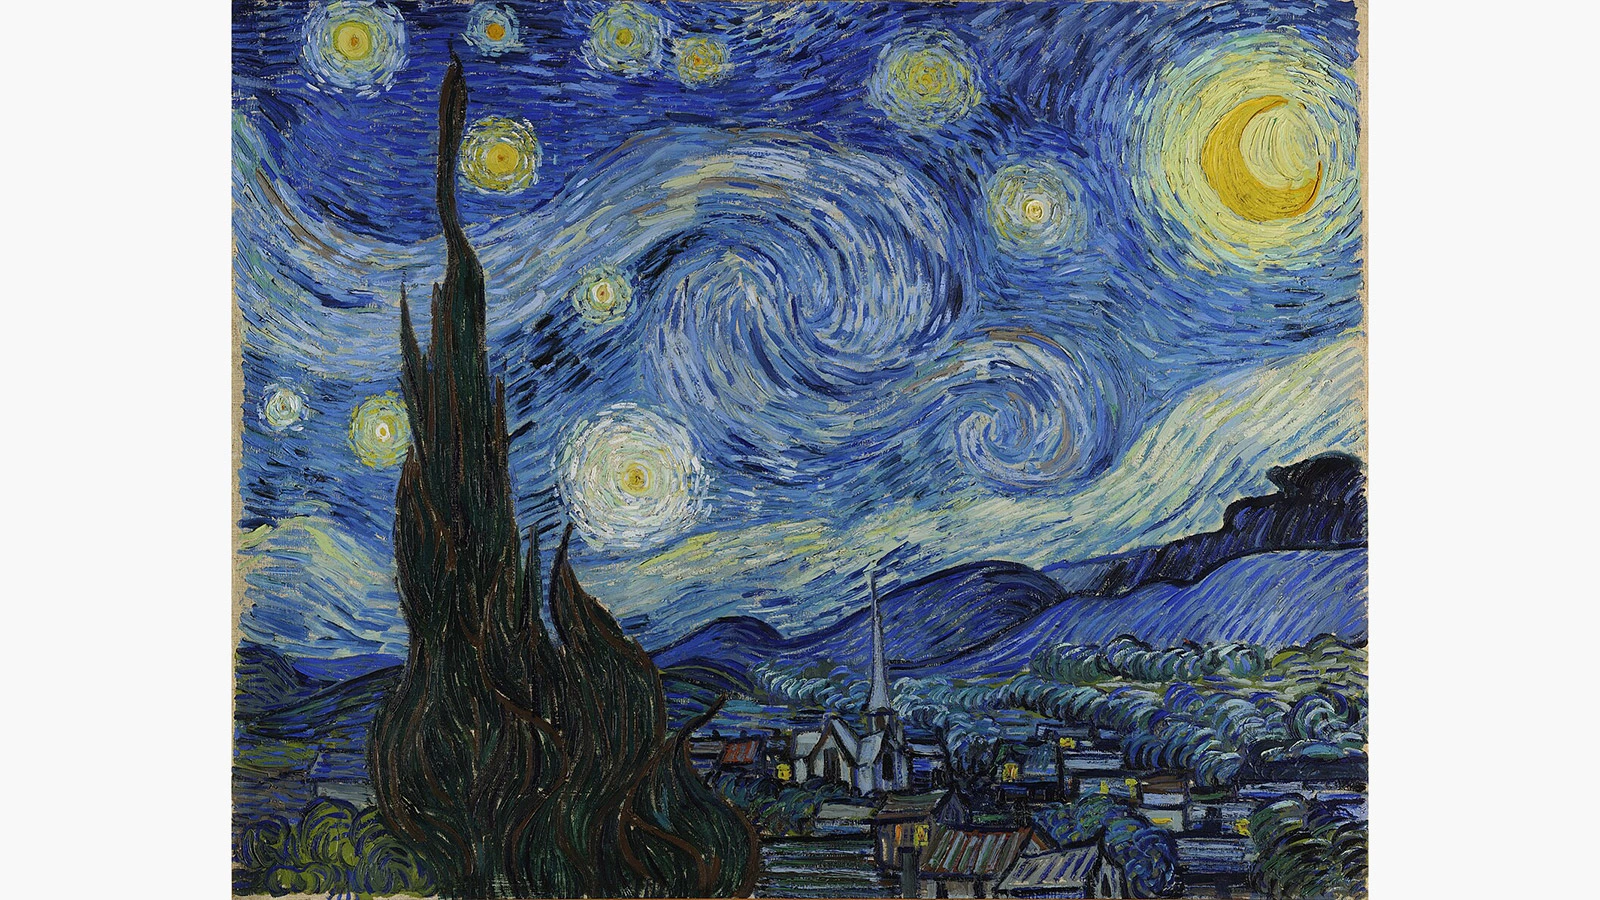 Картина «Звездная ночь», Винсент Ван Гог — описание и видеообзор